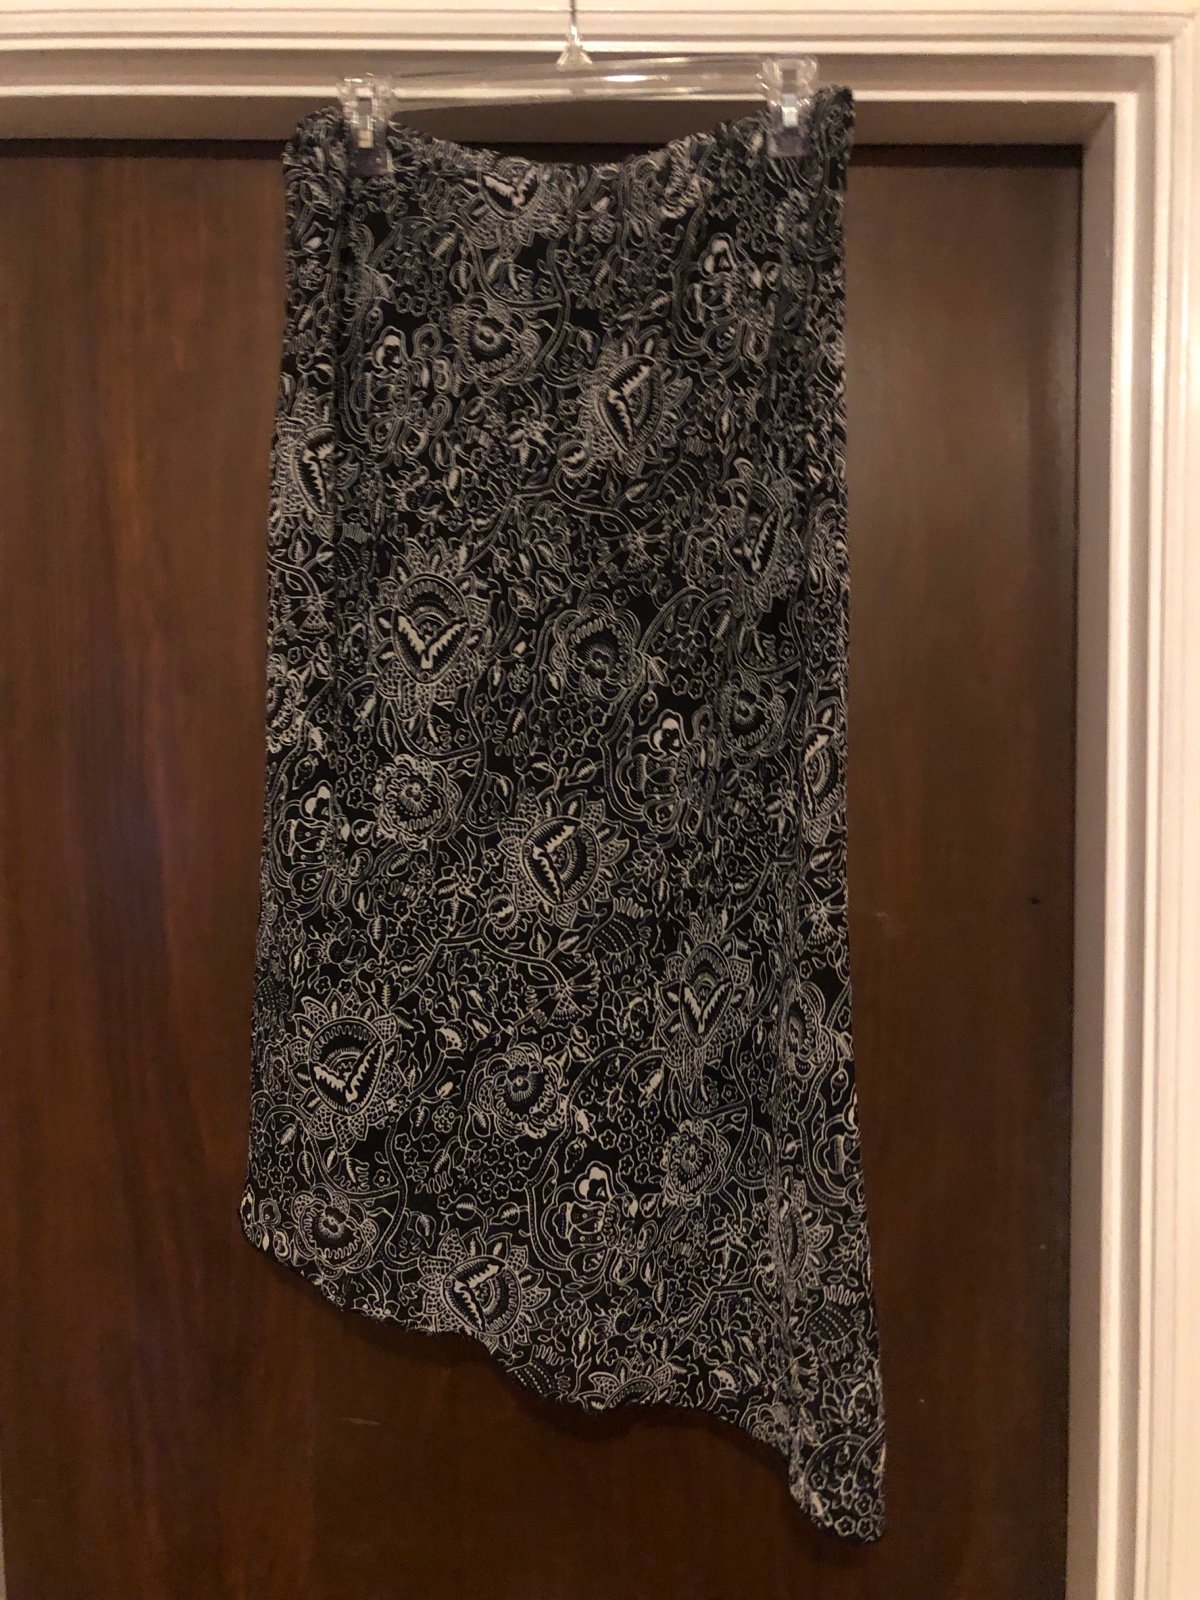 Black/White Skirt-size 14-35” at longest part of skirt-25” at the shortest part FMT4vzoIM